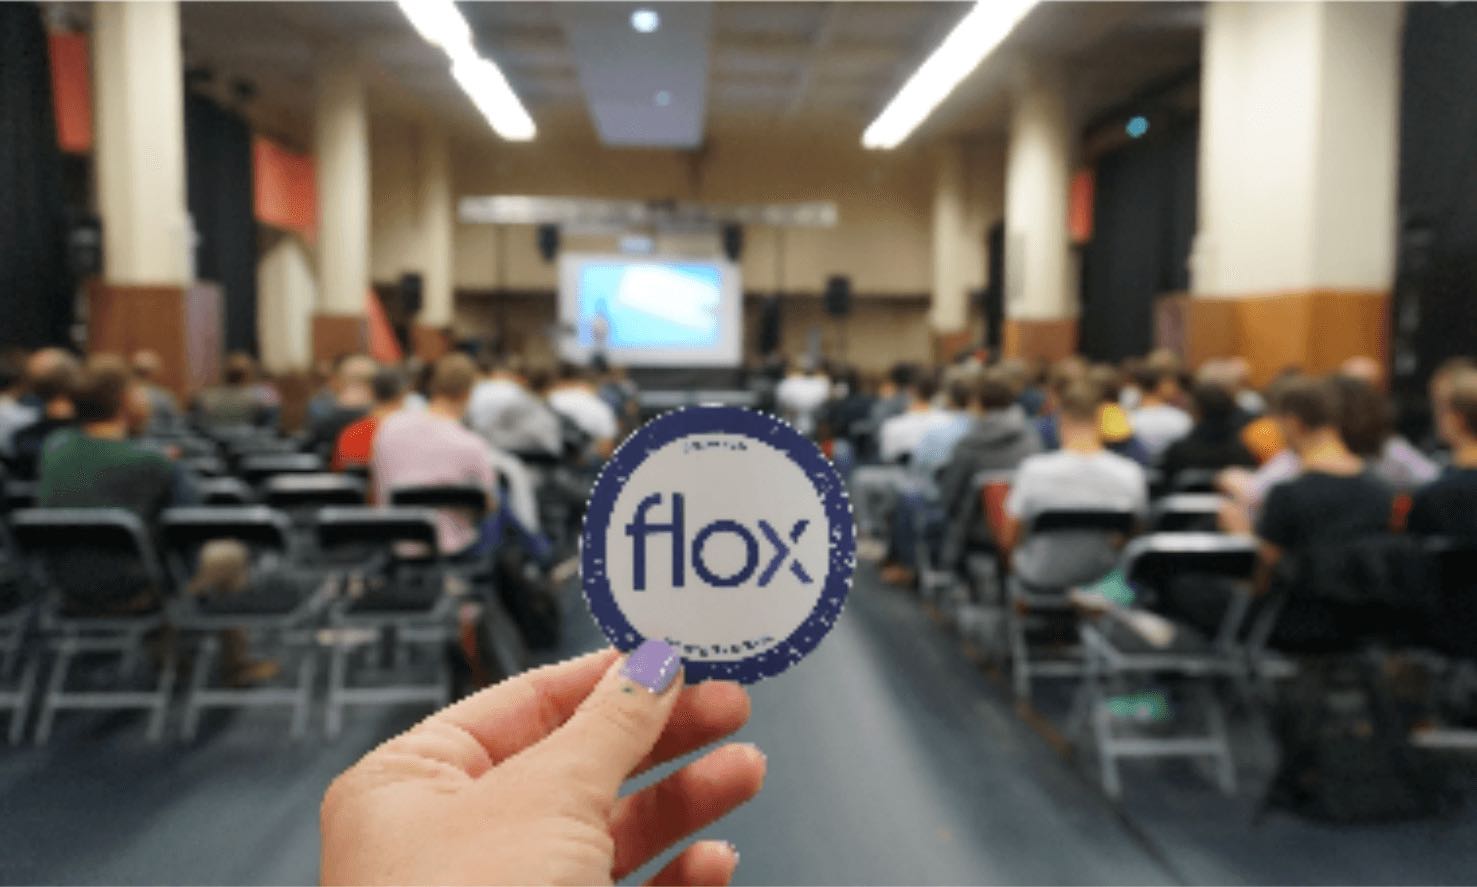 Nix management startup flox raises $16.5M, launches open-source platform - SiliconANGLE